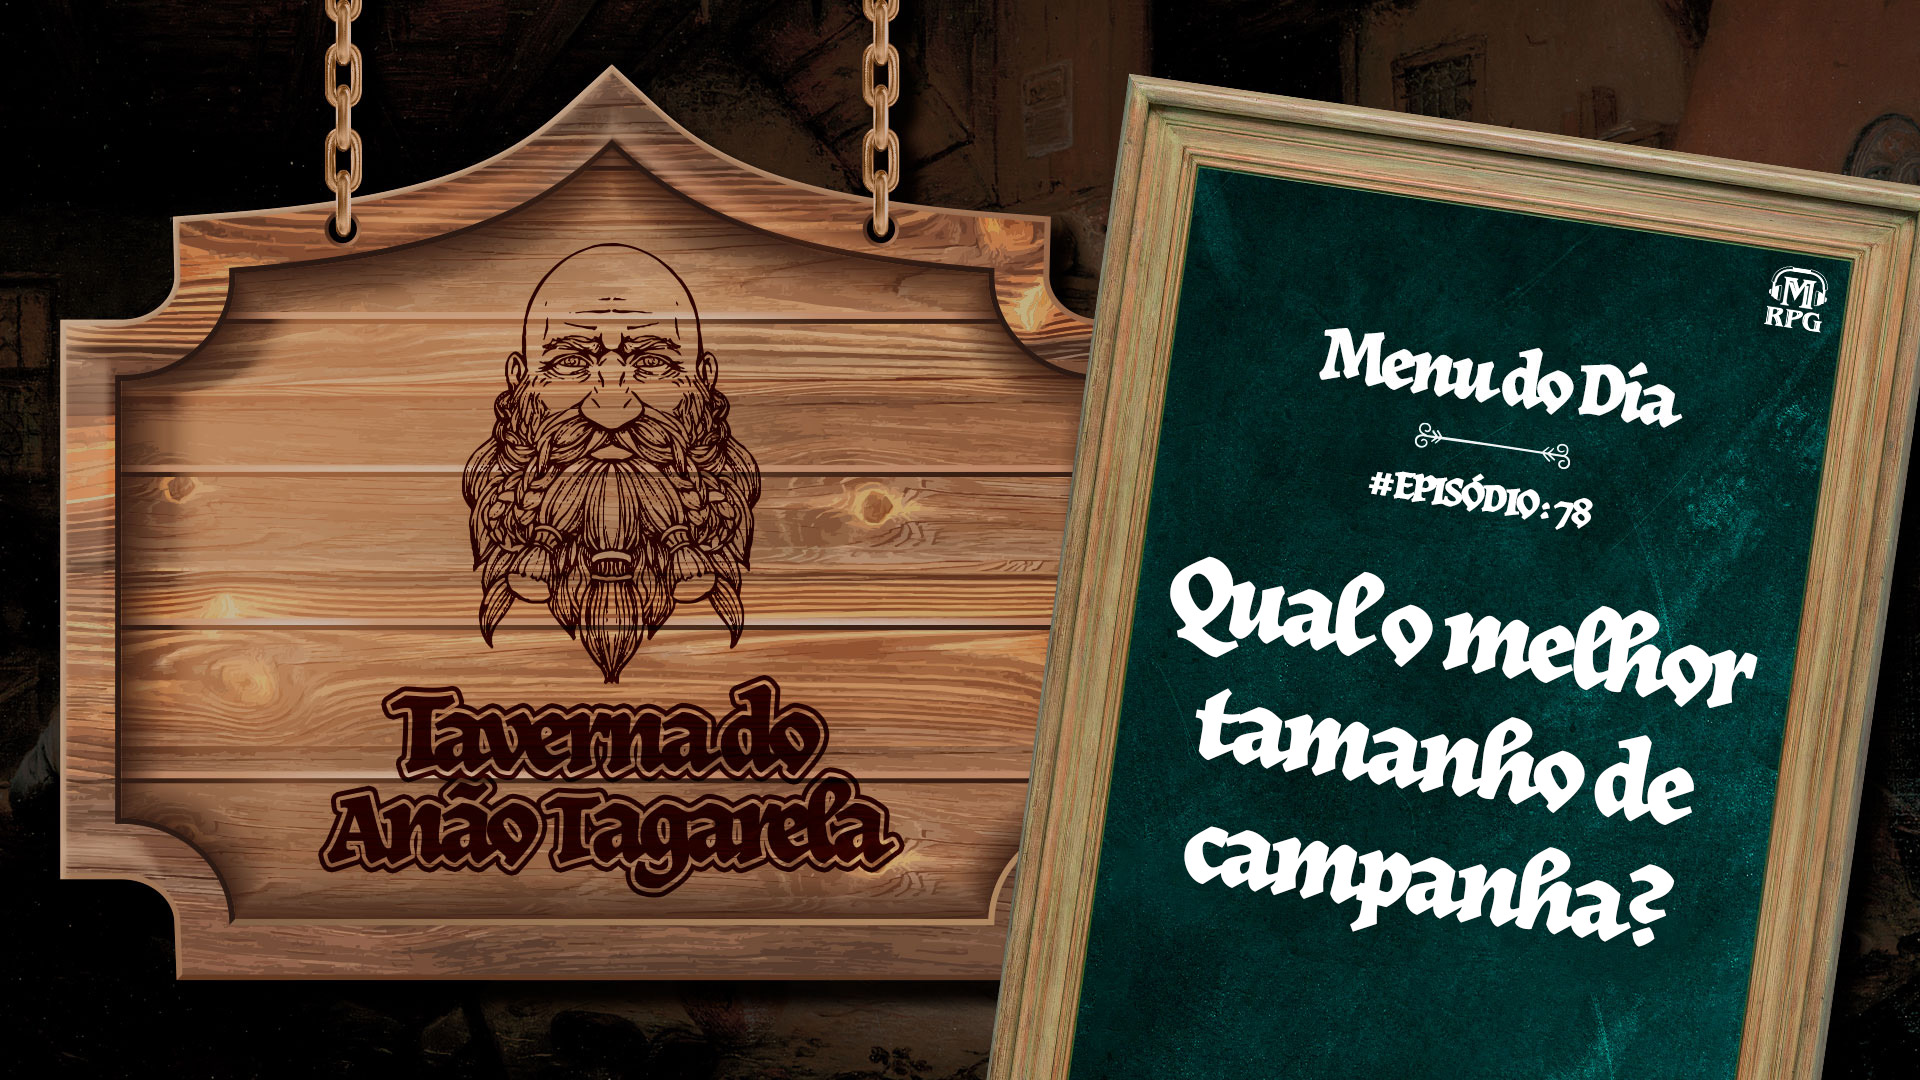 Qual o Melhor Tamanho de Campanha? – Taverna do Anão Tagarela #78